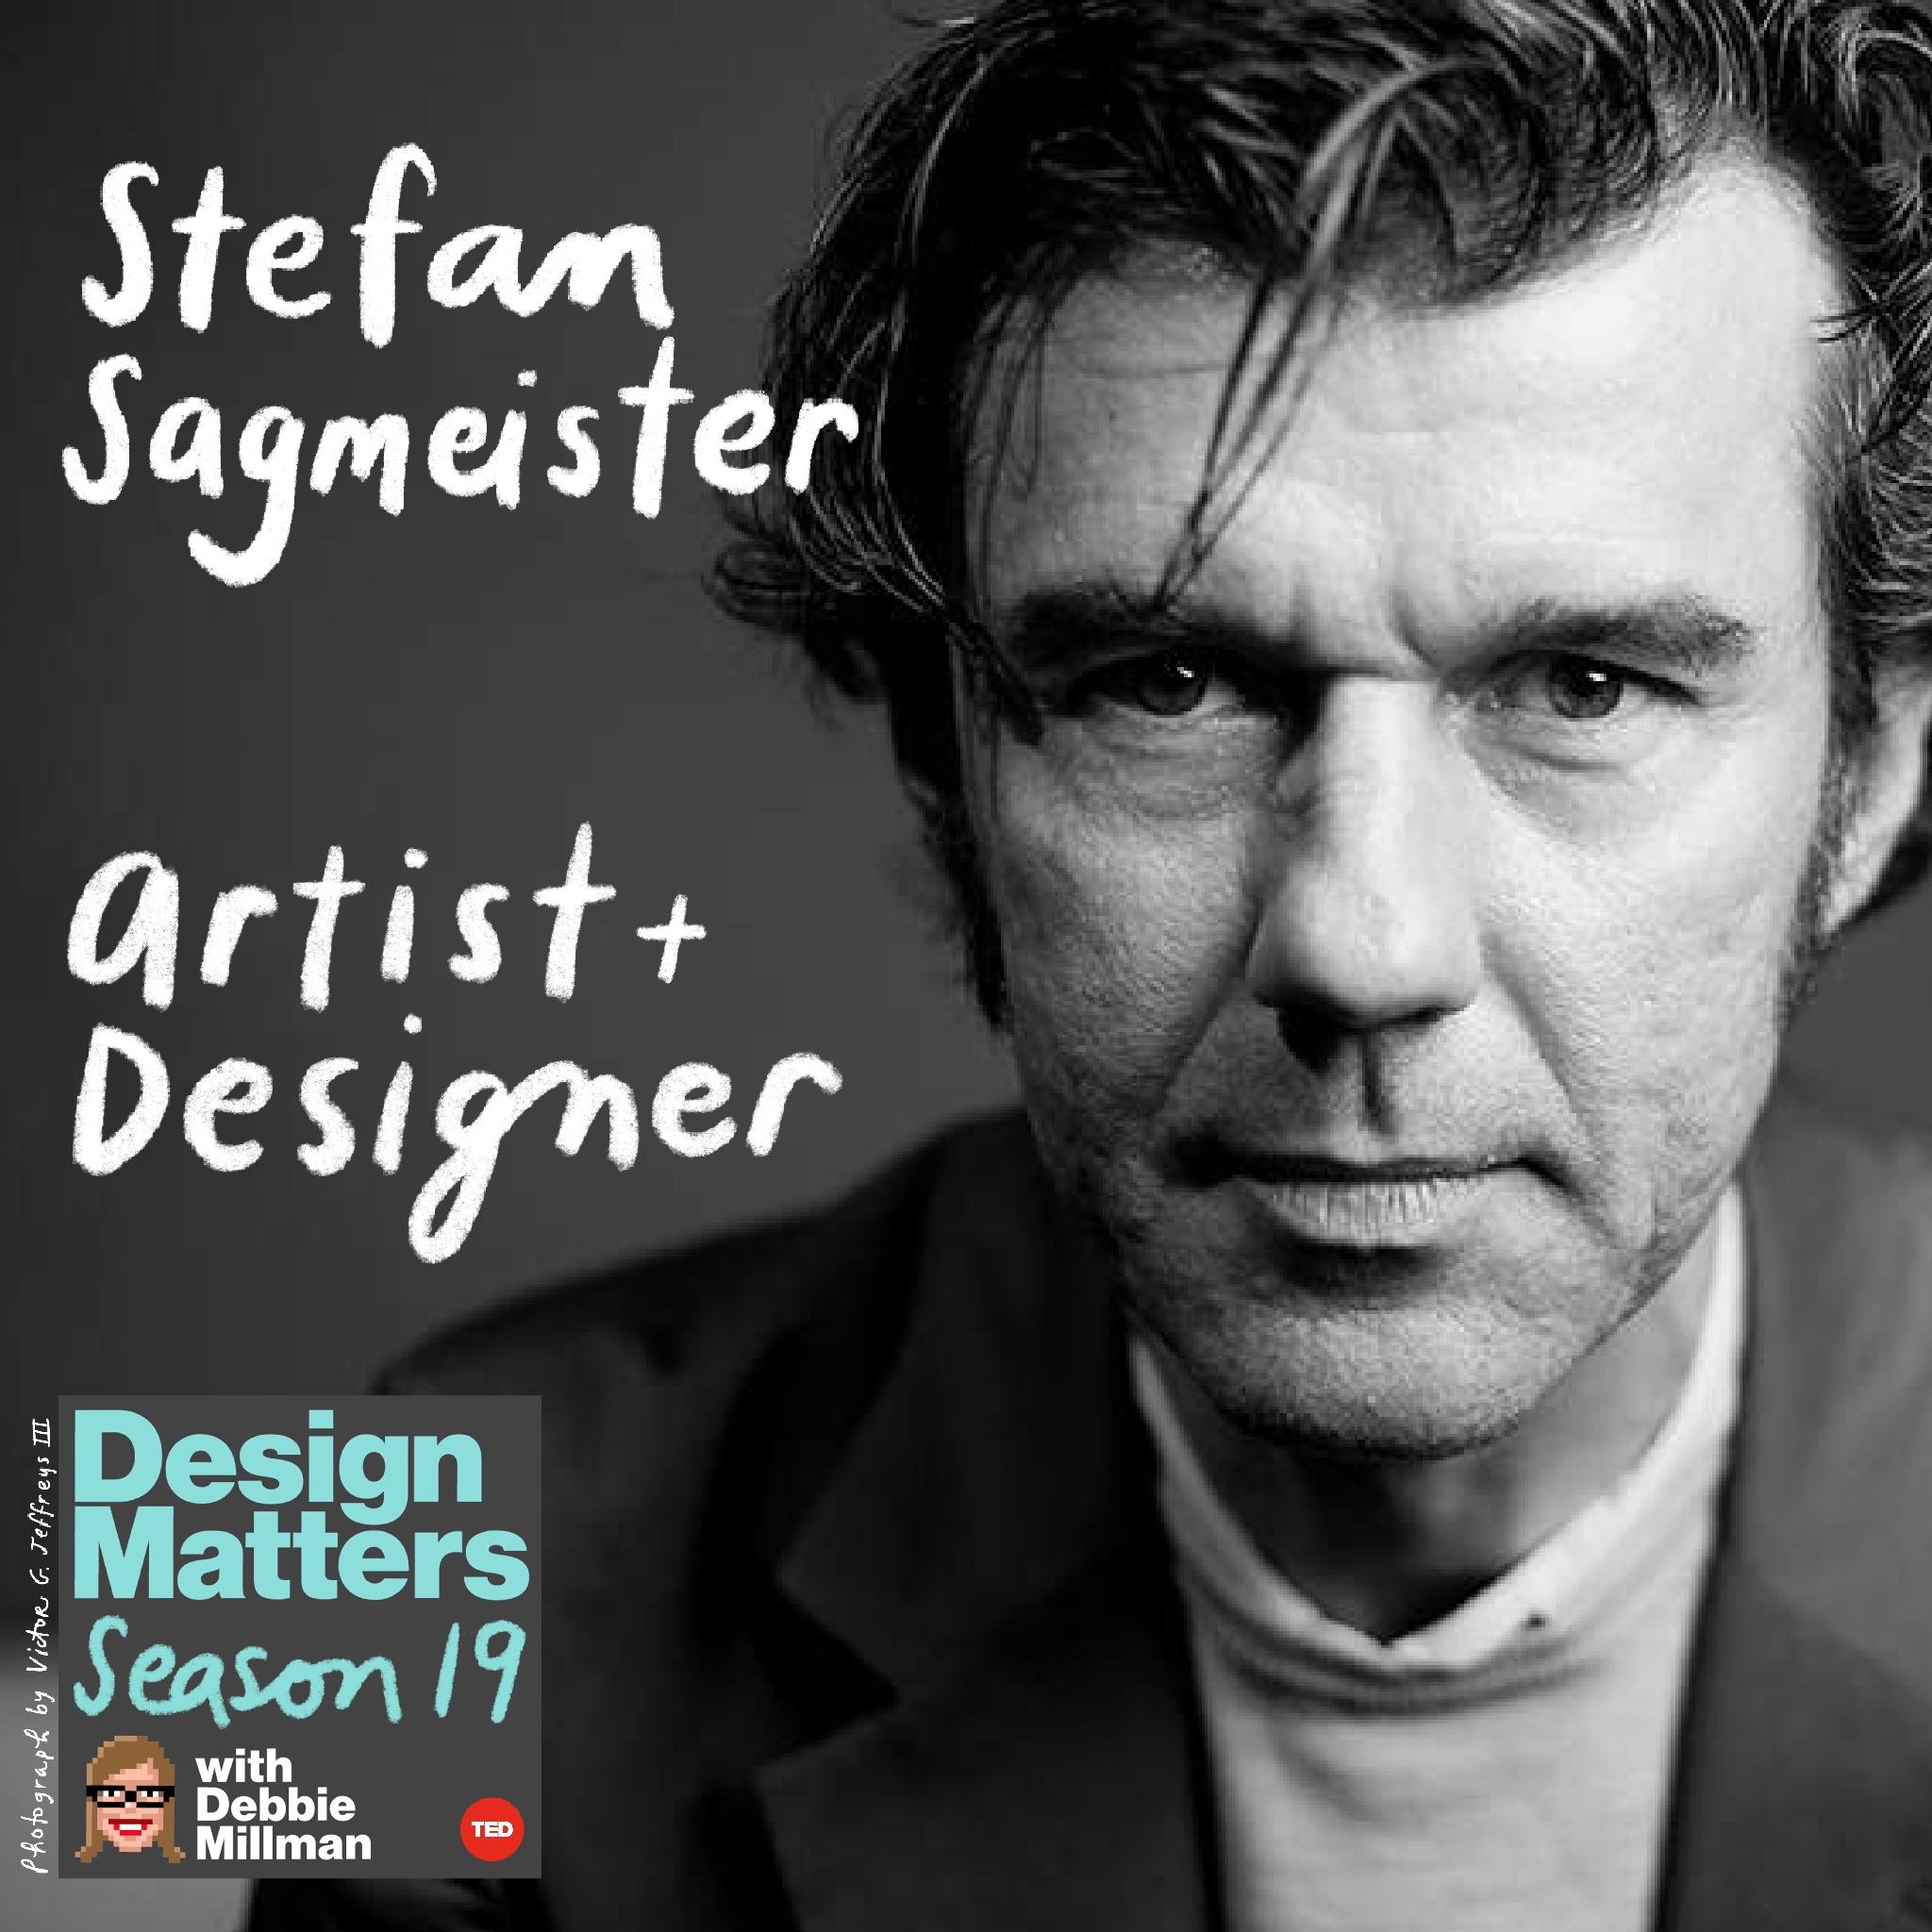 Thumbnail for "Stefan Sagmeister".